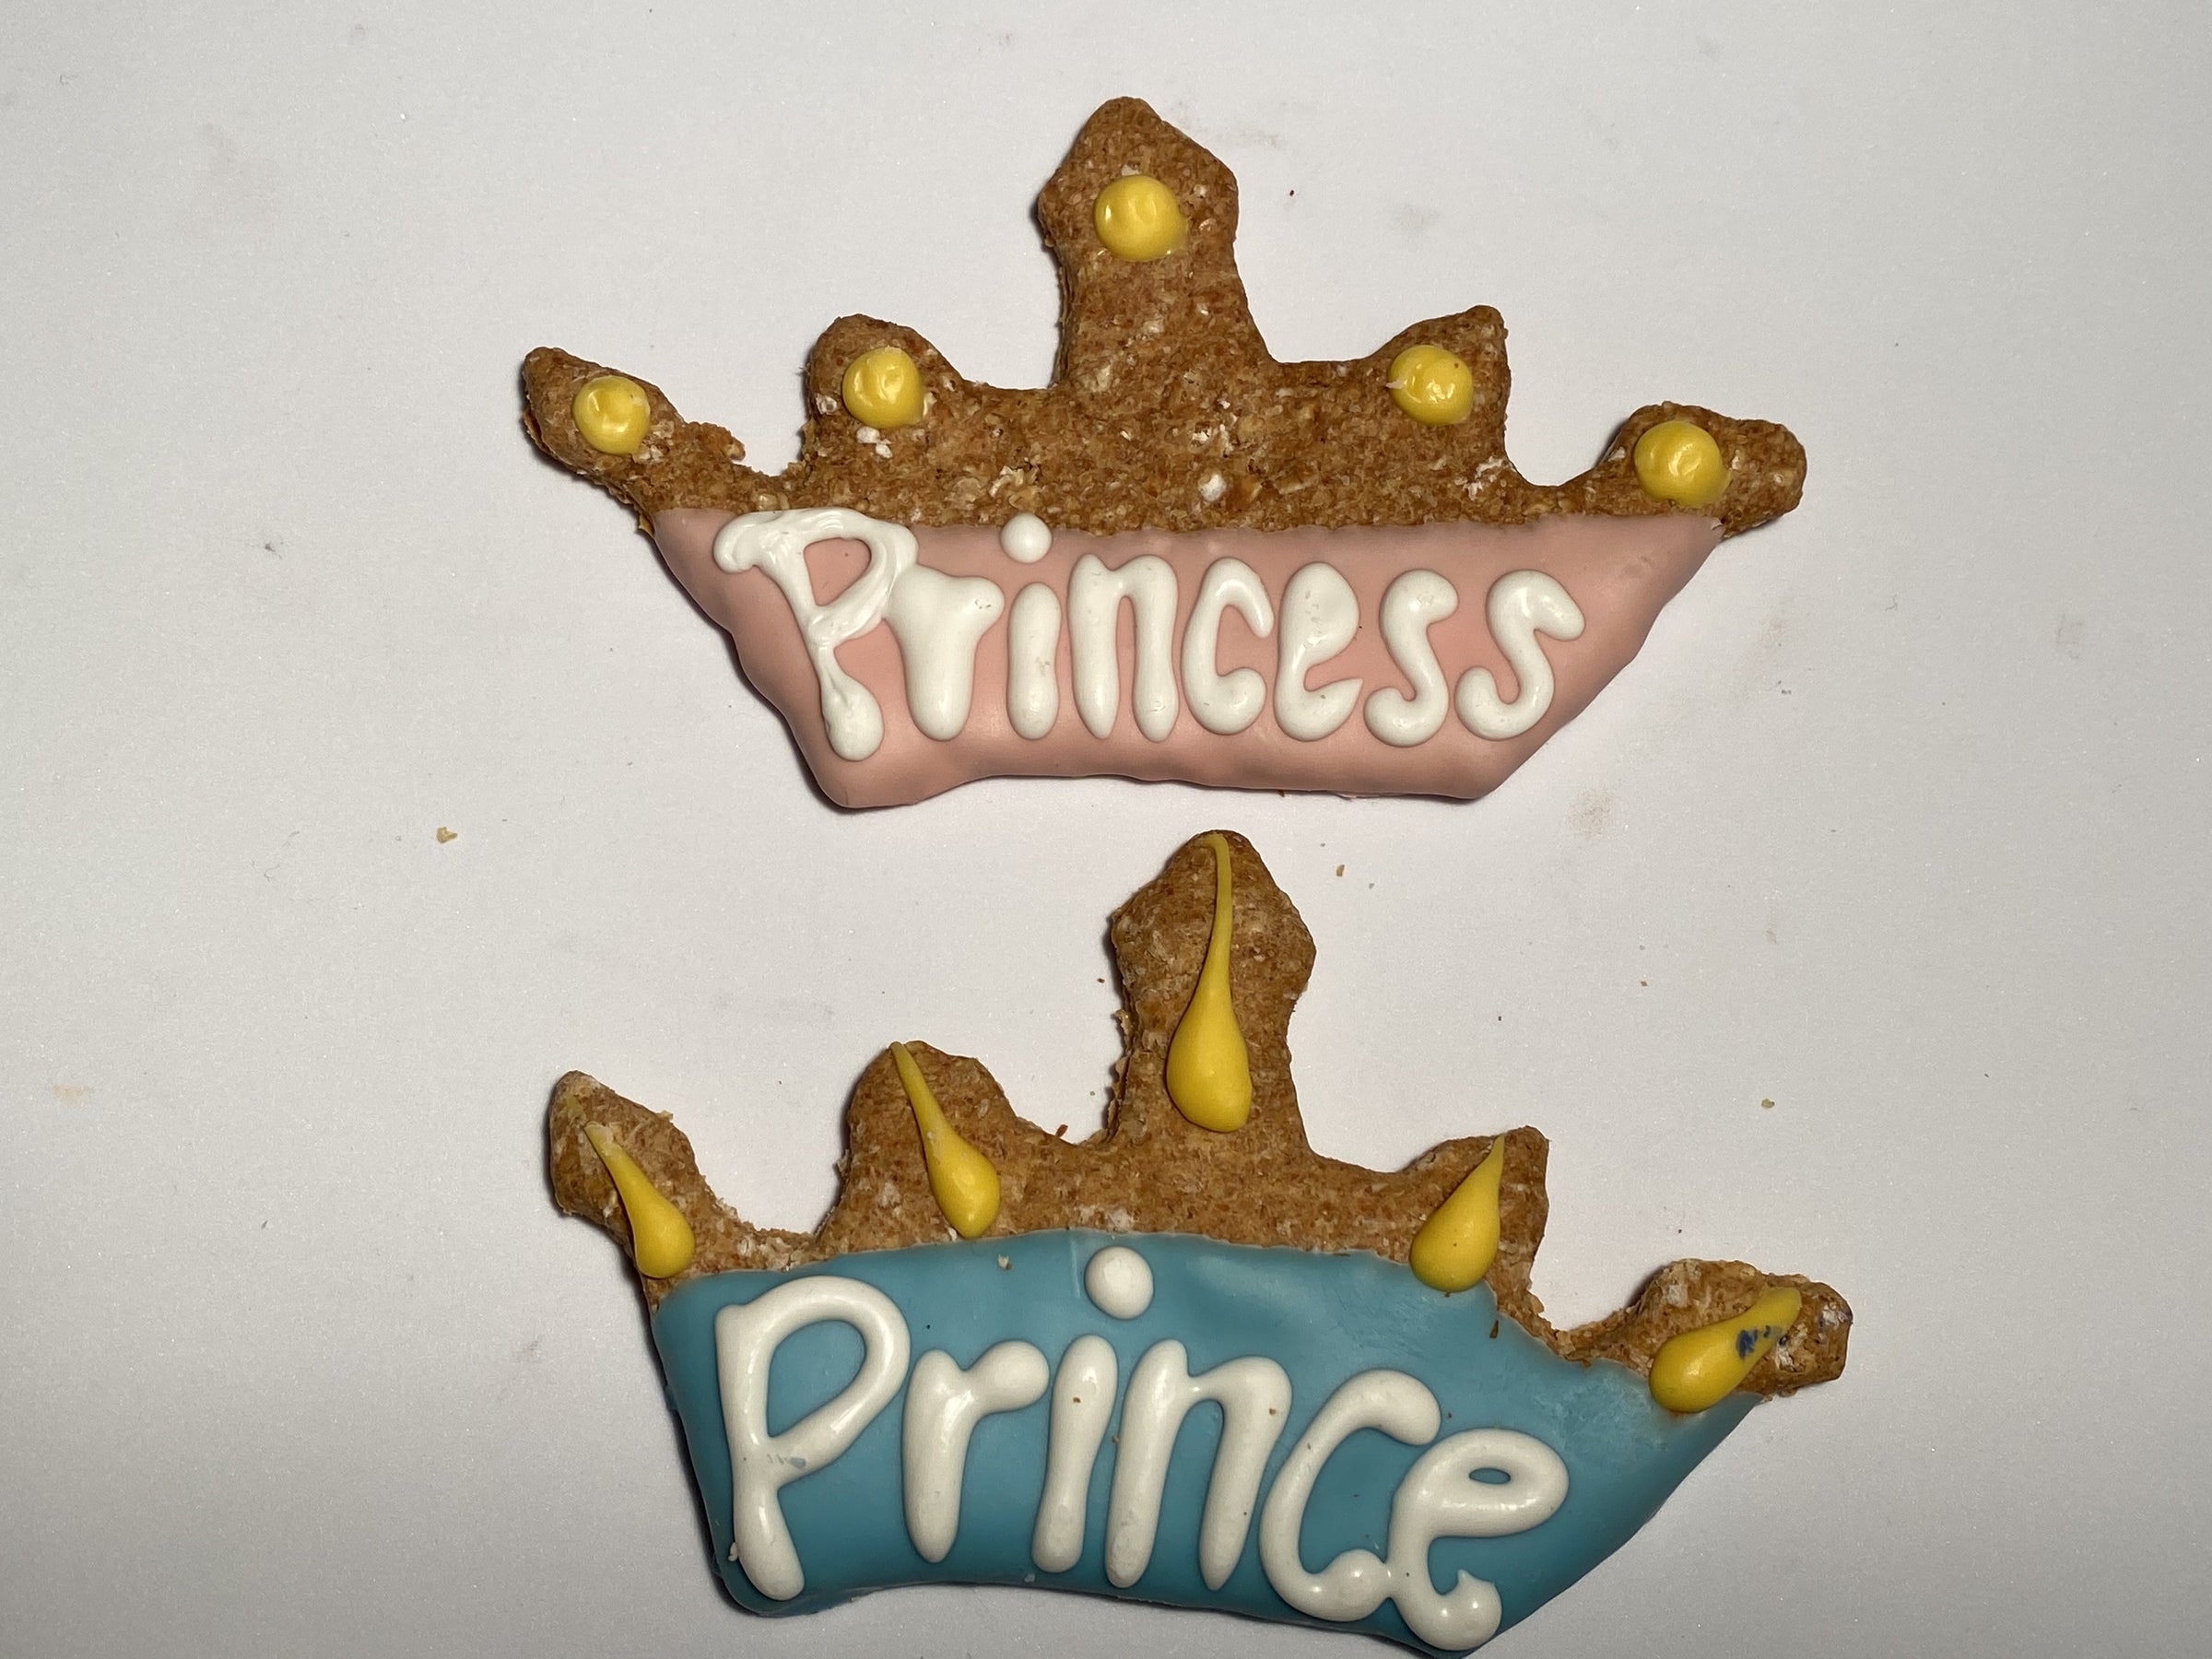 Prince/Princess Crown Treat-Four Muddy Paws